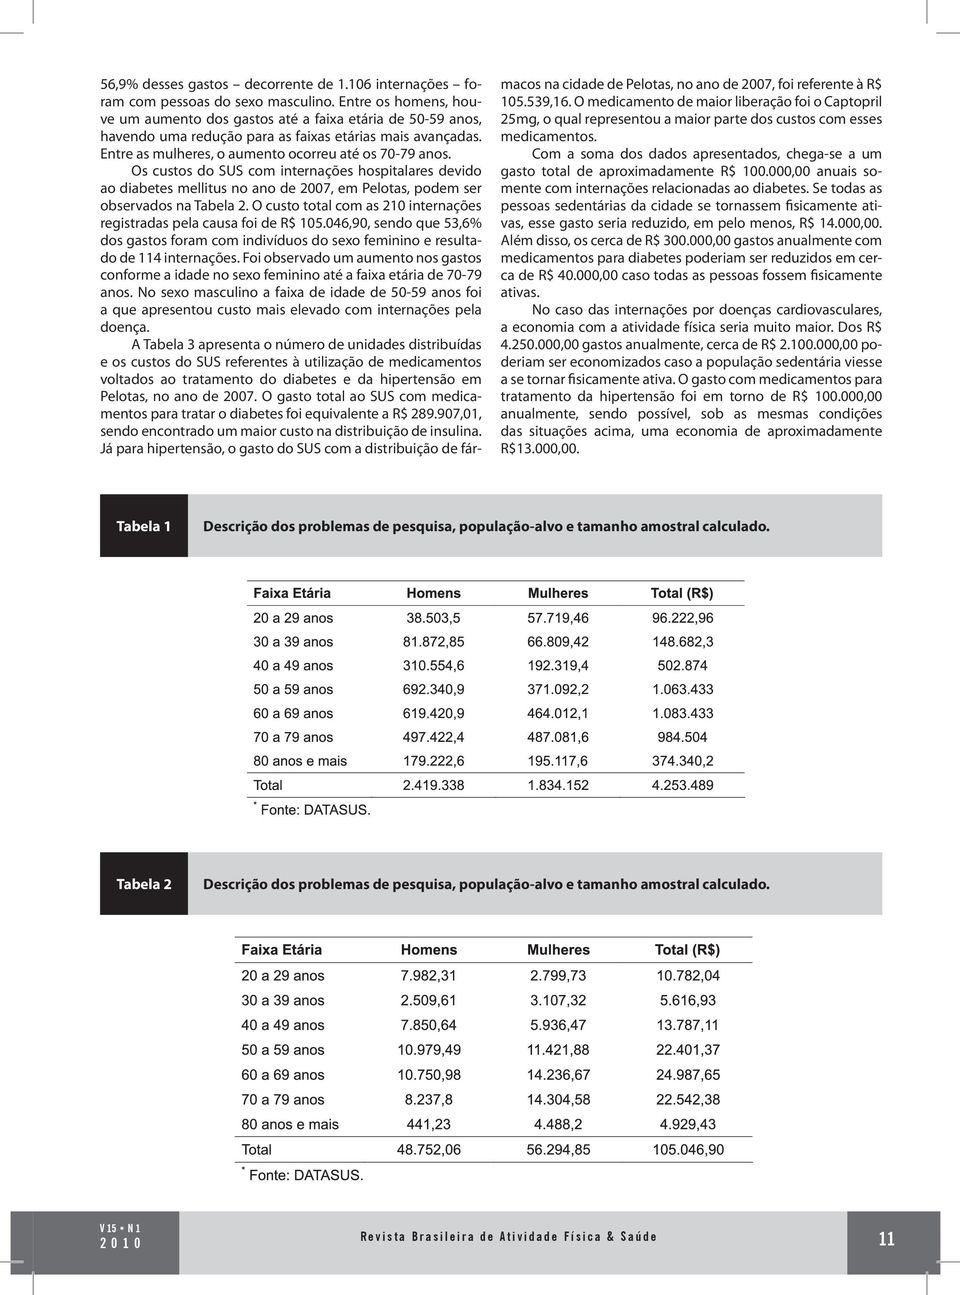 Os custos do SUS com internações hospitalares devido ao diabetes mellitus no ano de 2007, em Pelotas, podem ser observados na Tabela 2.